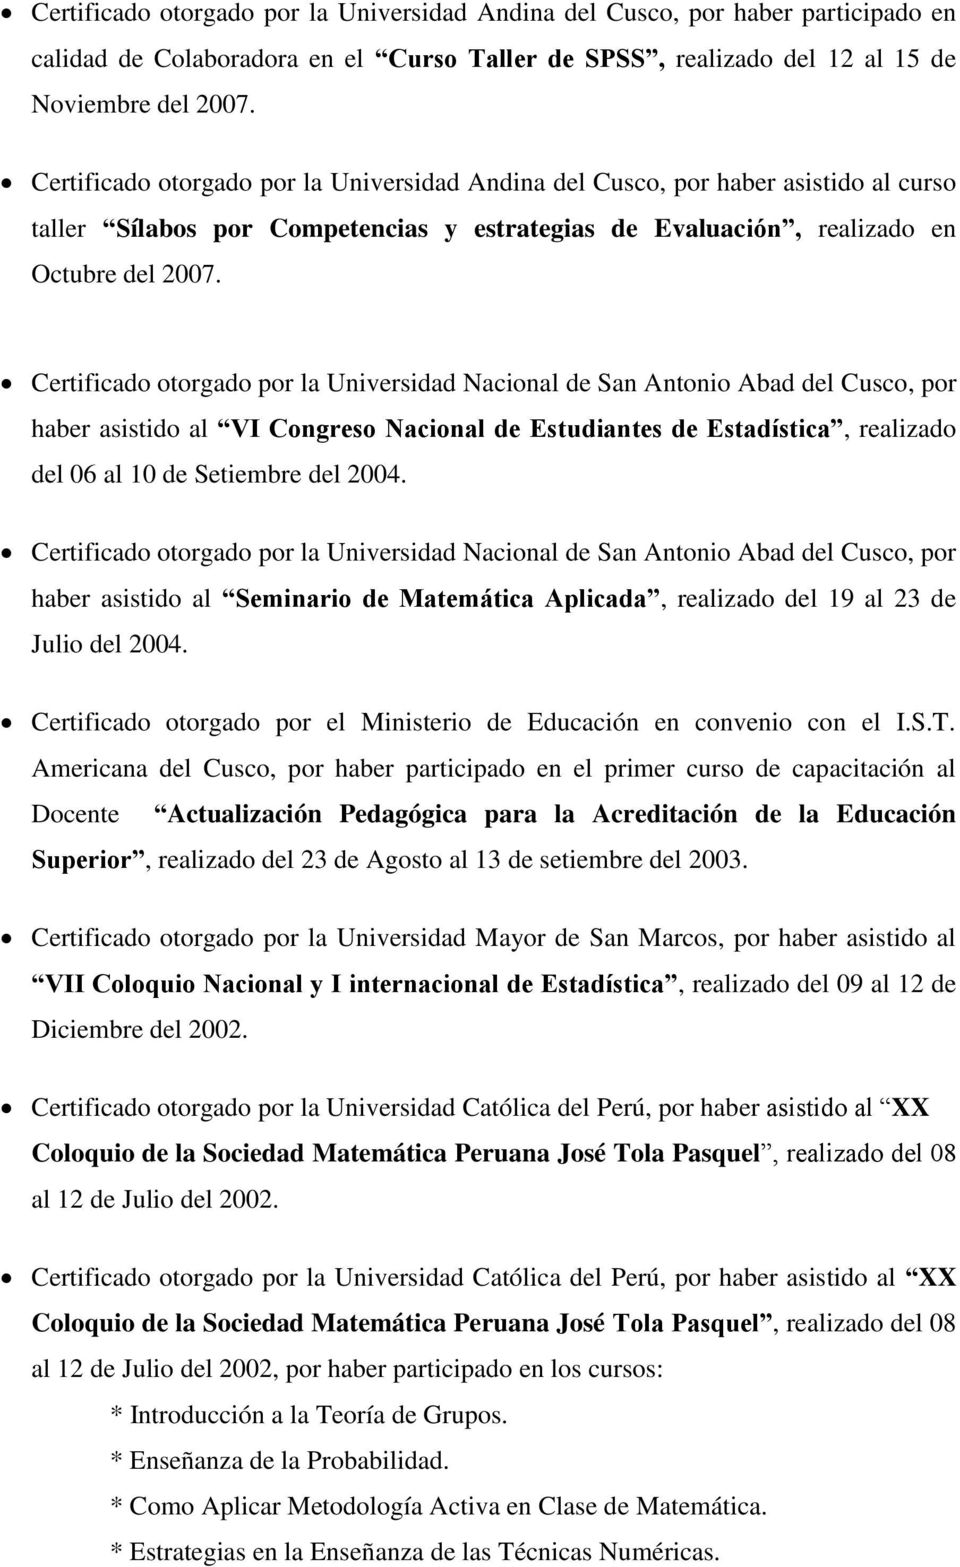 Certificado otorgado por la Universidad Nacional de San Antonio Abad del Cusco, por haber asistido al VI Congreso Nacional de Estudiantes de Estadística, realizado del 06 al 10 de Setiembre del 2004.